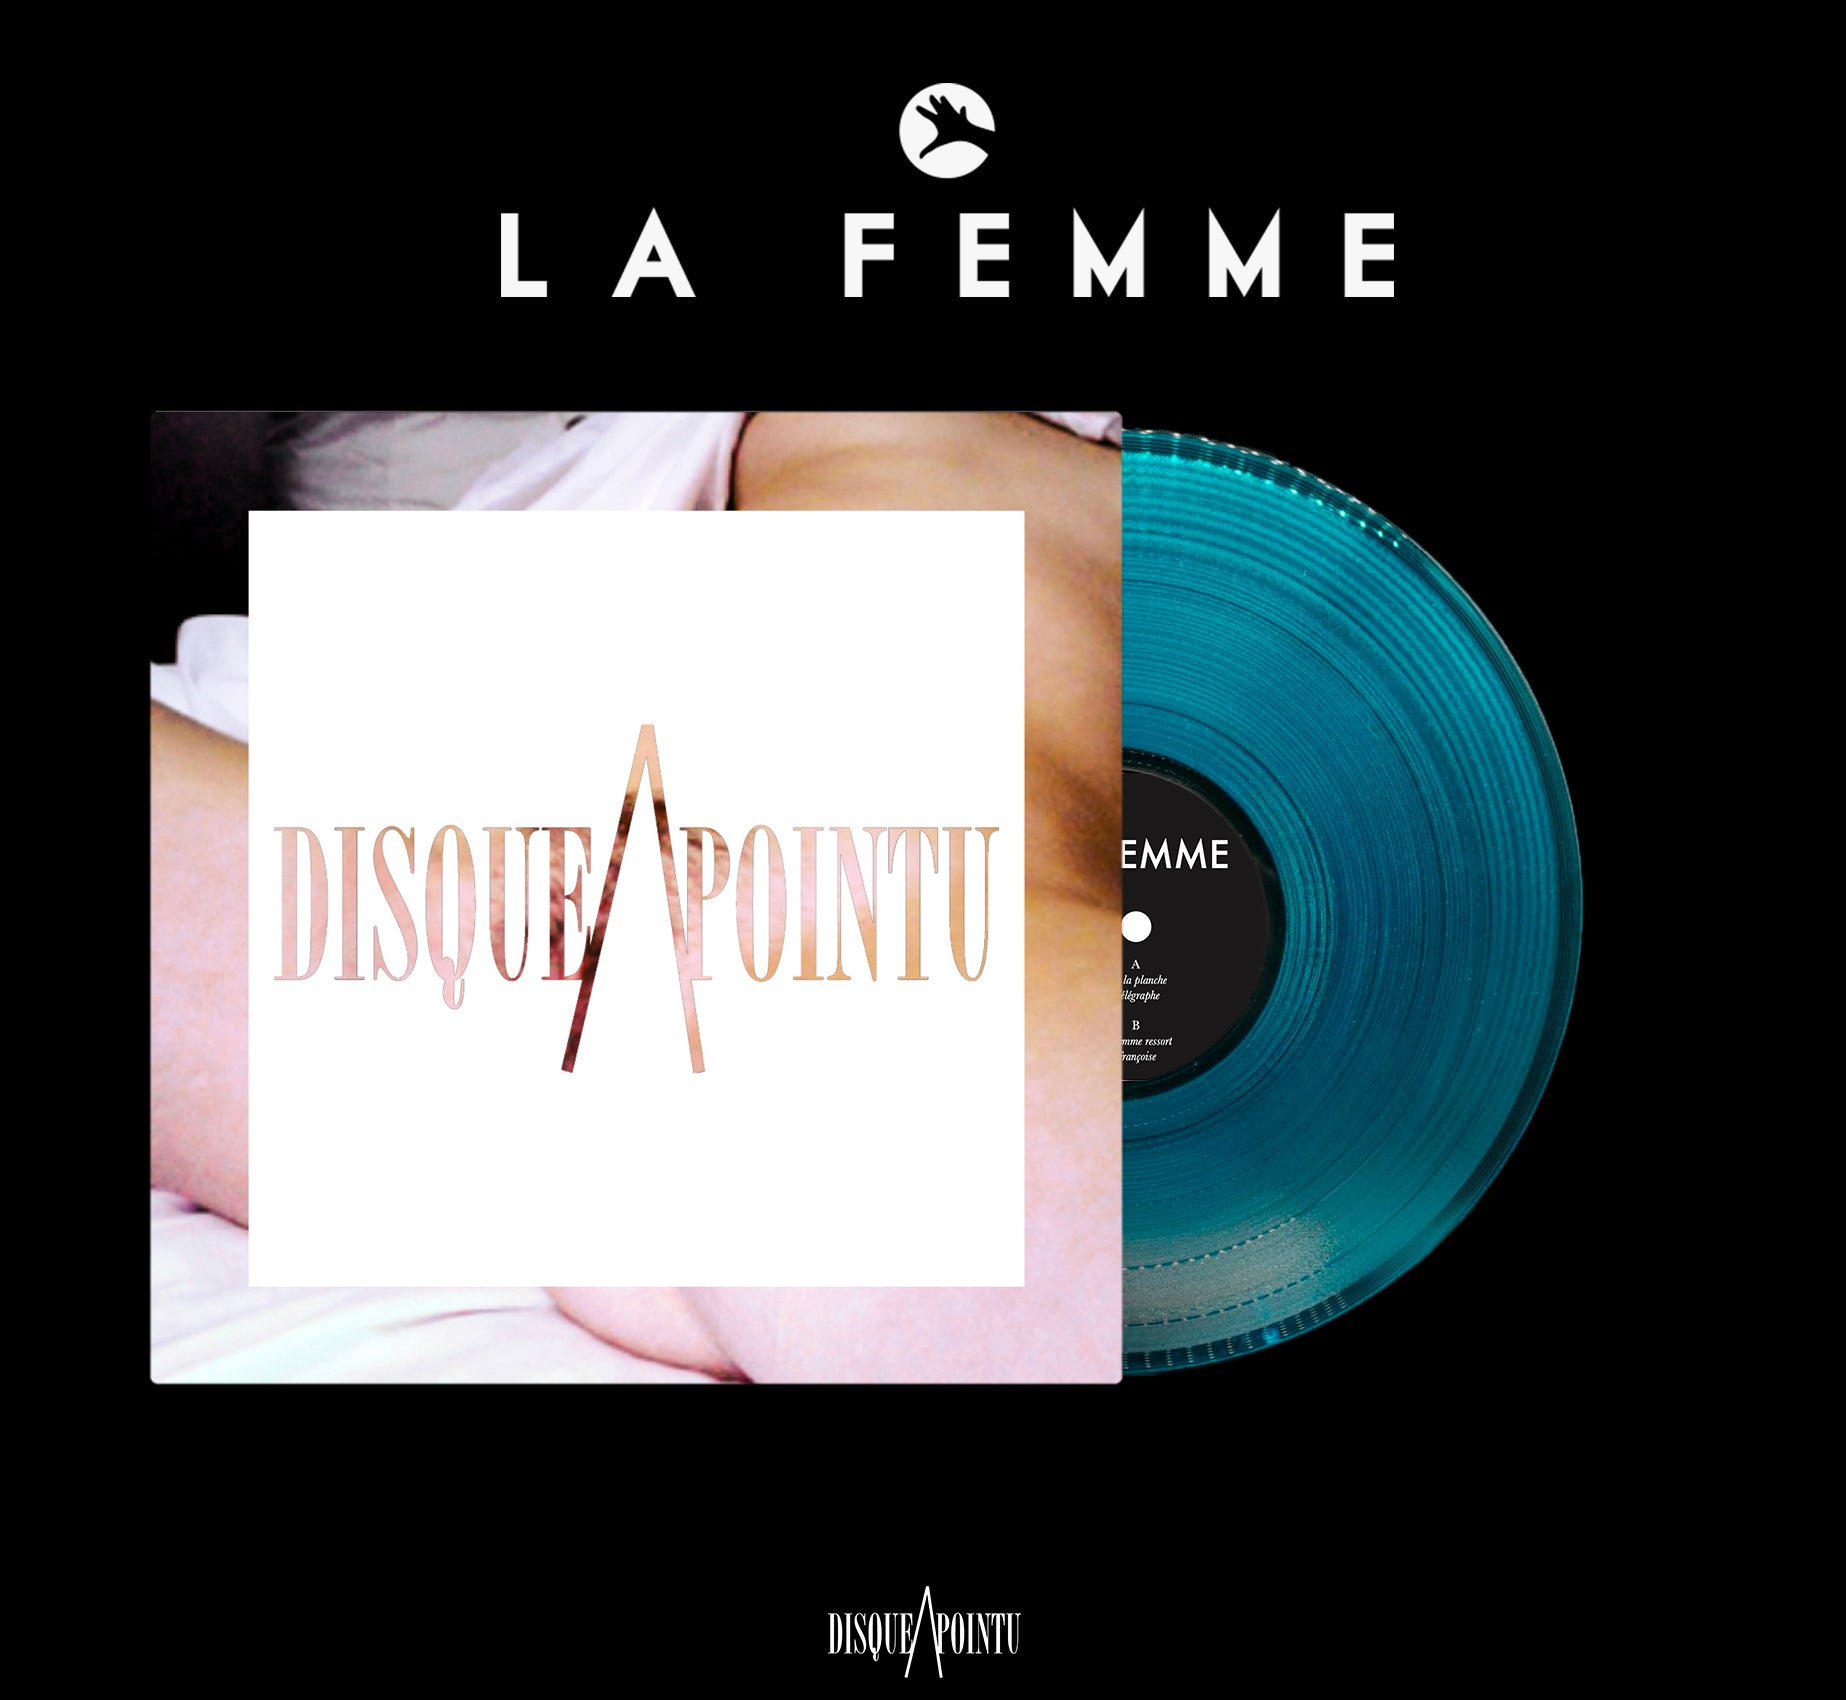 La Femme: albums, songs, playlists